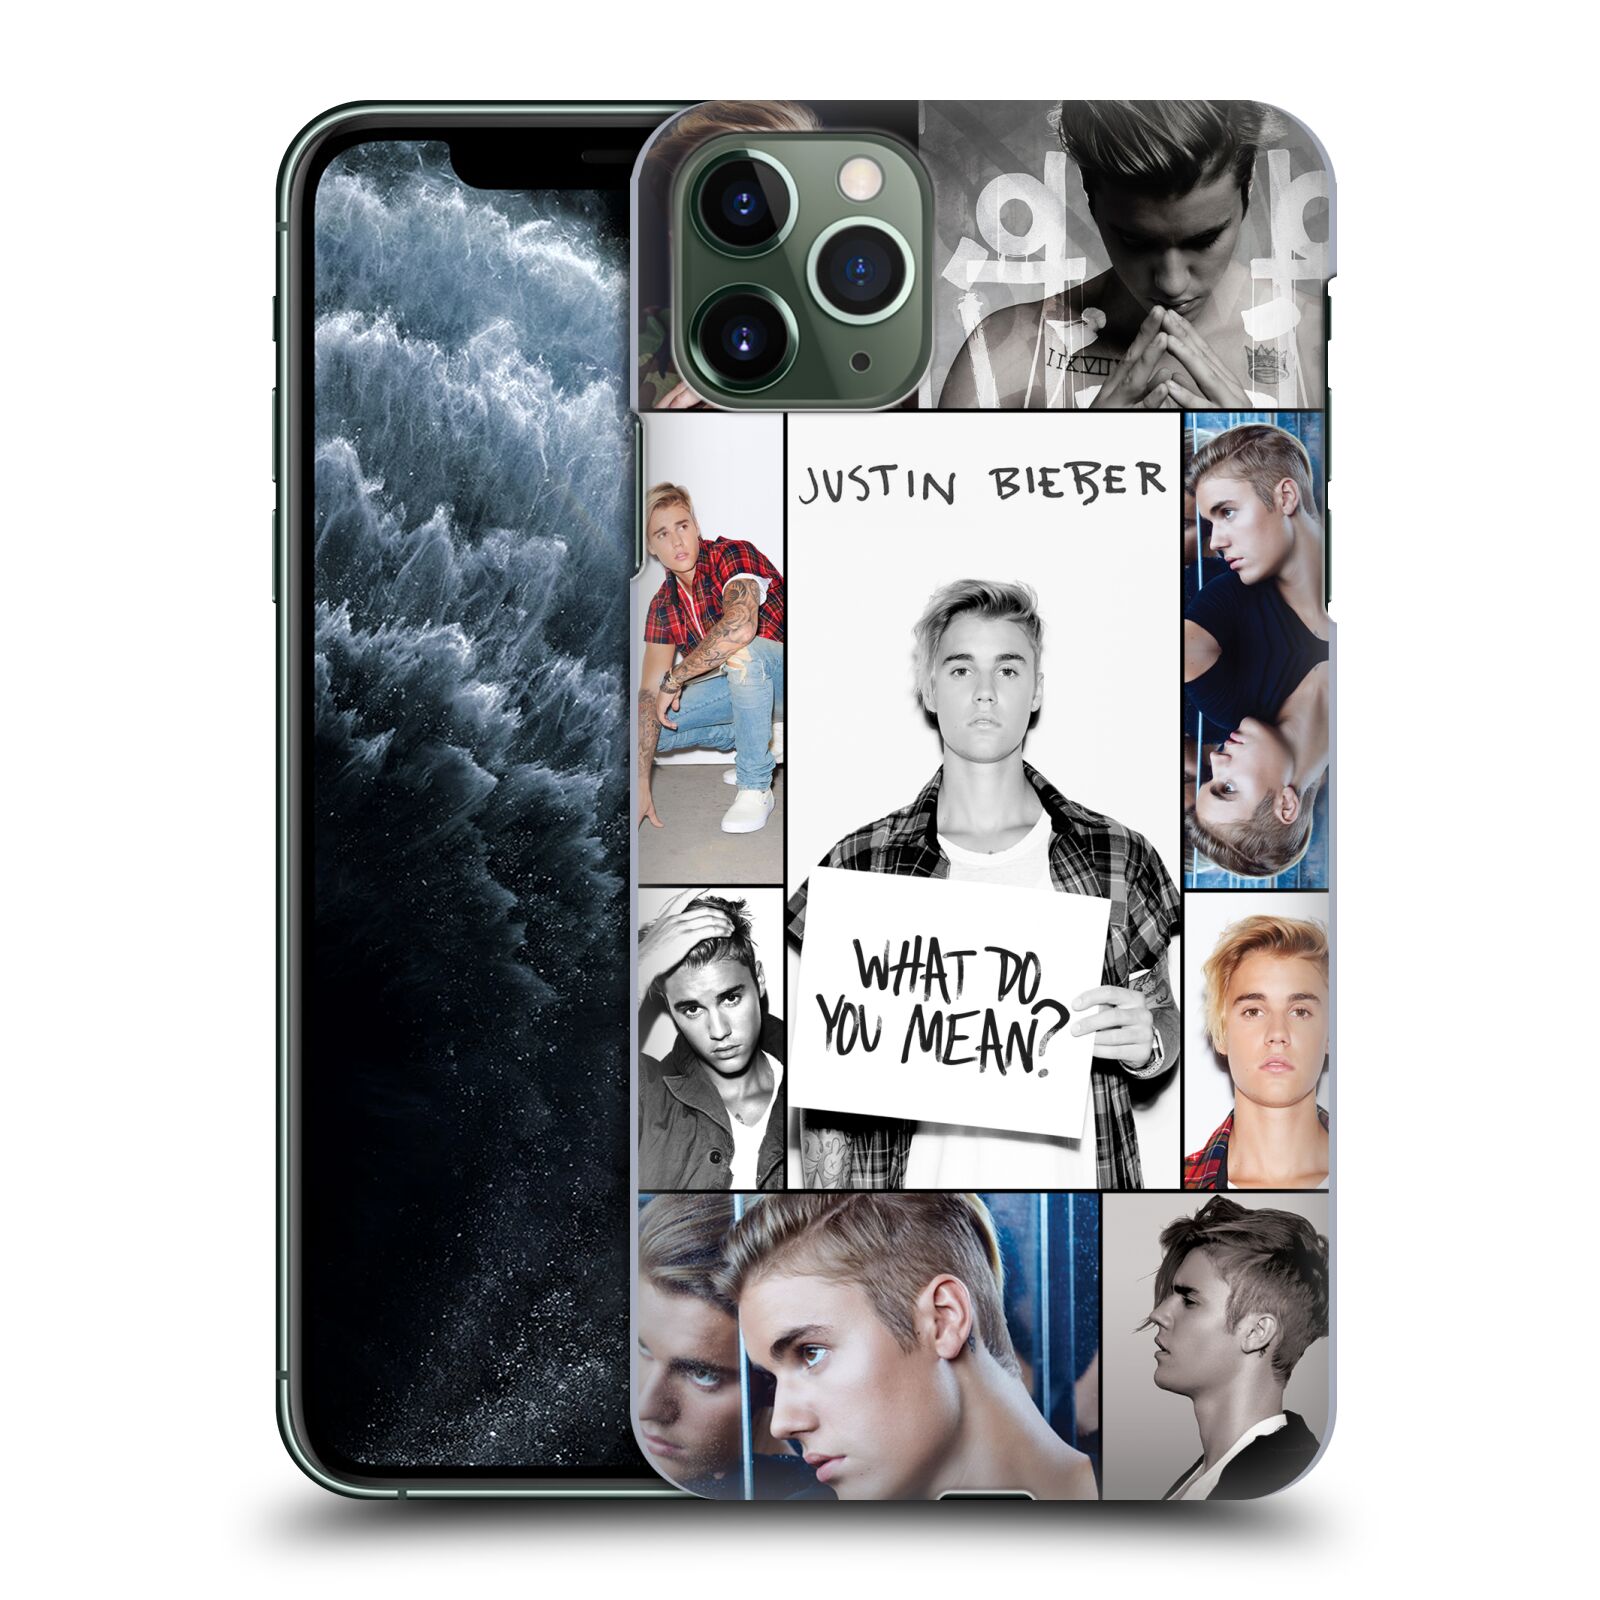 Pouzdro na mobil Apple Iphone 11 PRO MAX - HEAD CASE - Justin Bieber foto Purpose malé fotky